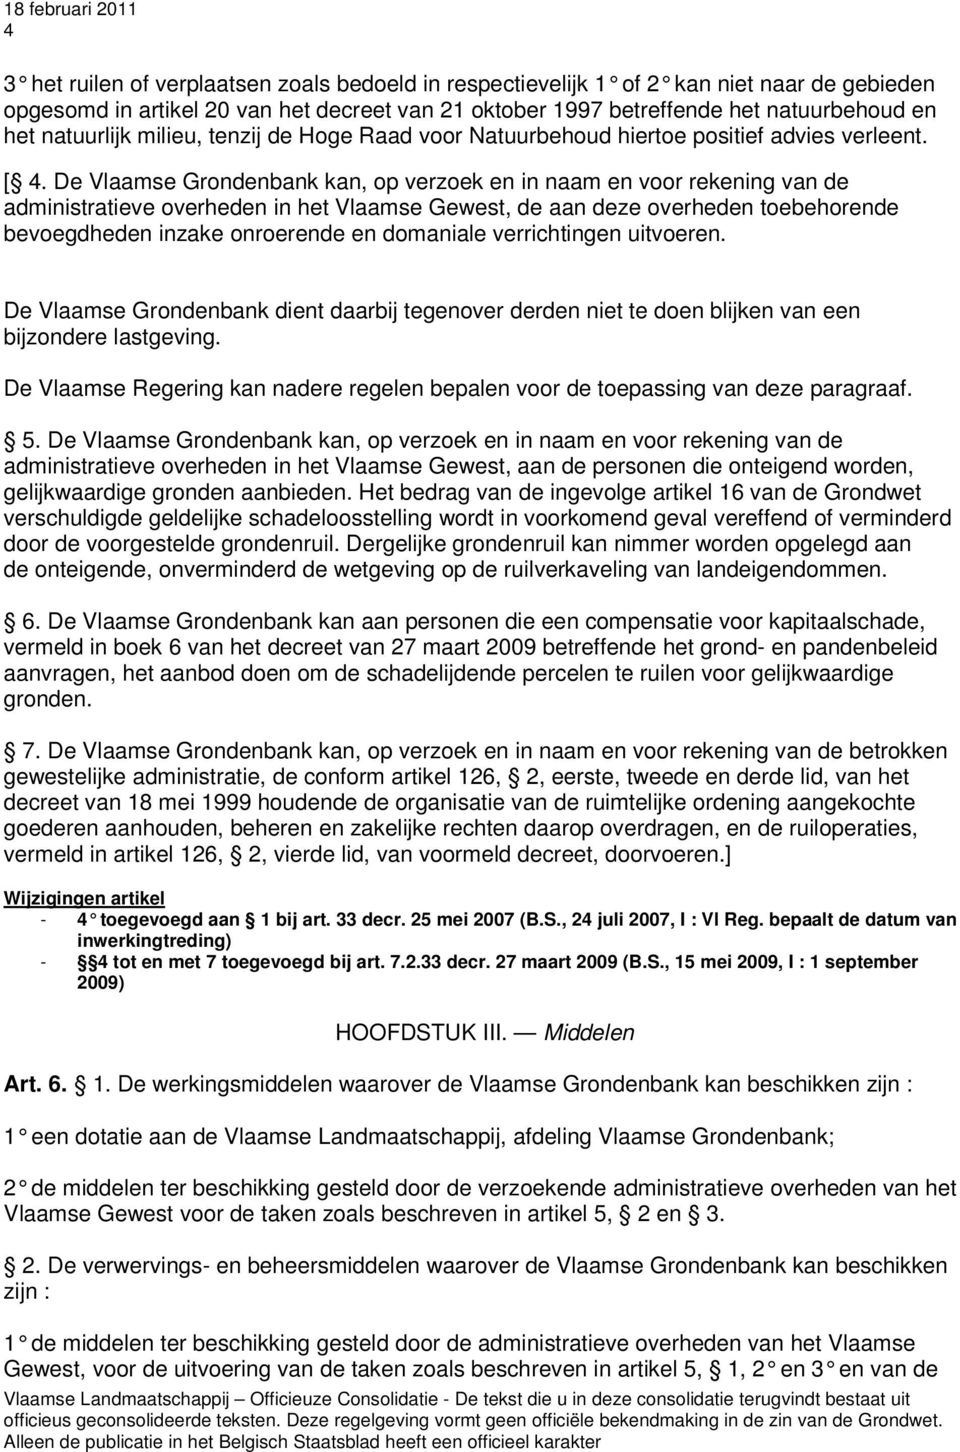 De Vlaamse Grondenbank kan, op verzoek en in naam en voor rekening van de administratieve overheden in het Vlaamse Gewest, de aan deze overheden toebehorende bevoegdheden inzake onroerende en